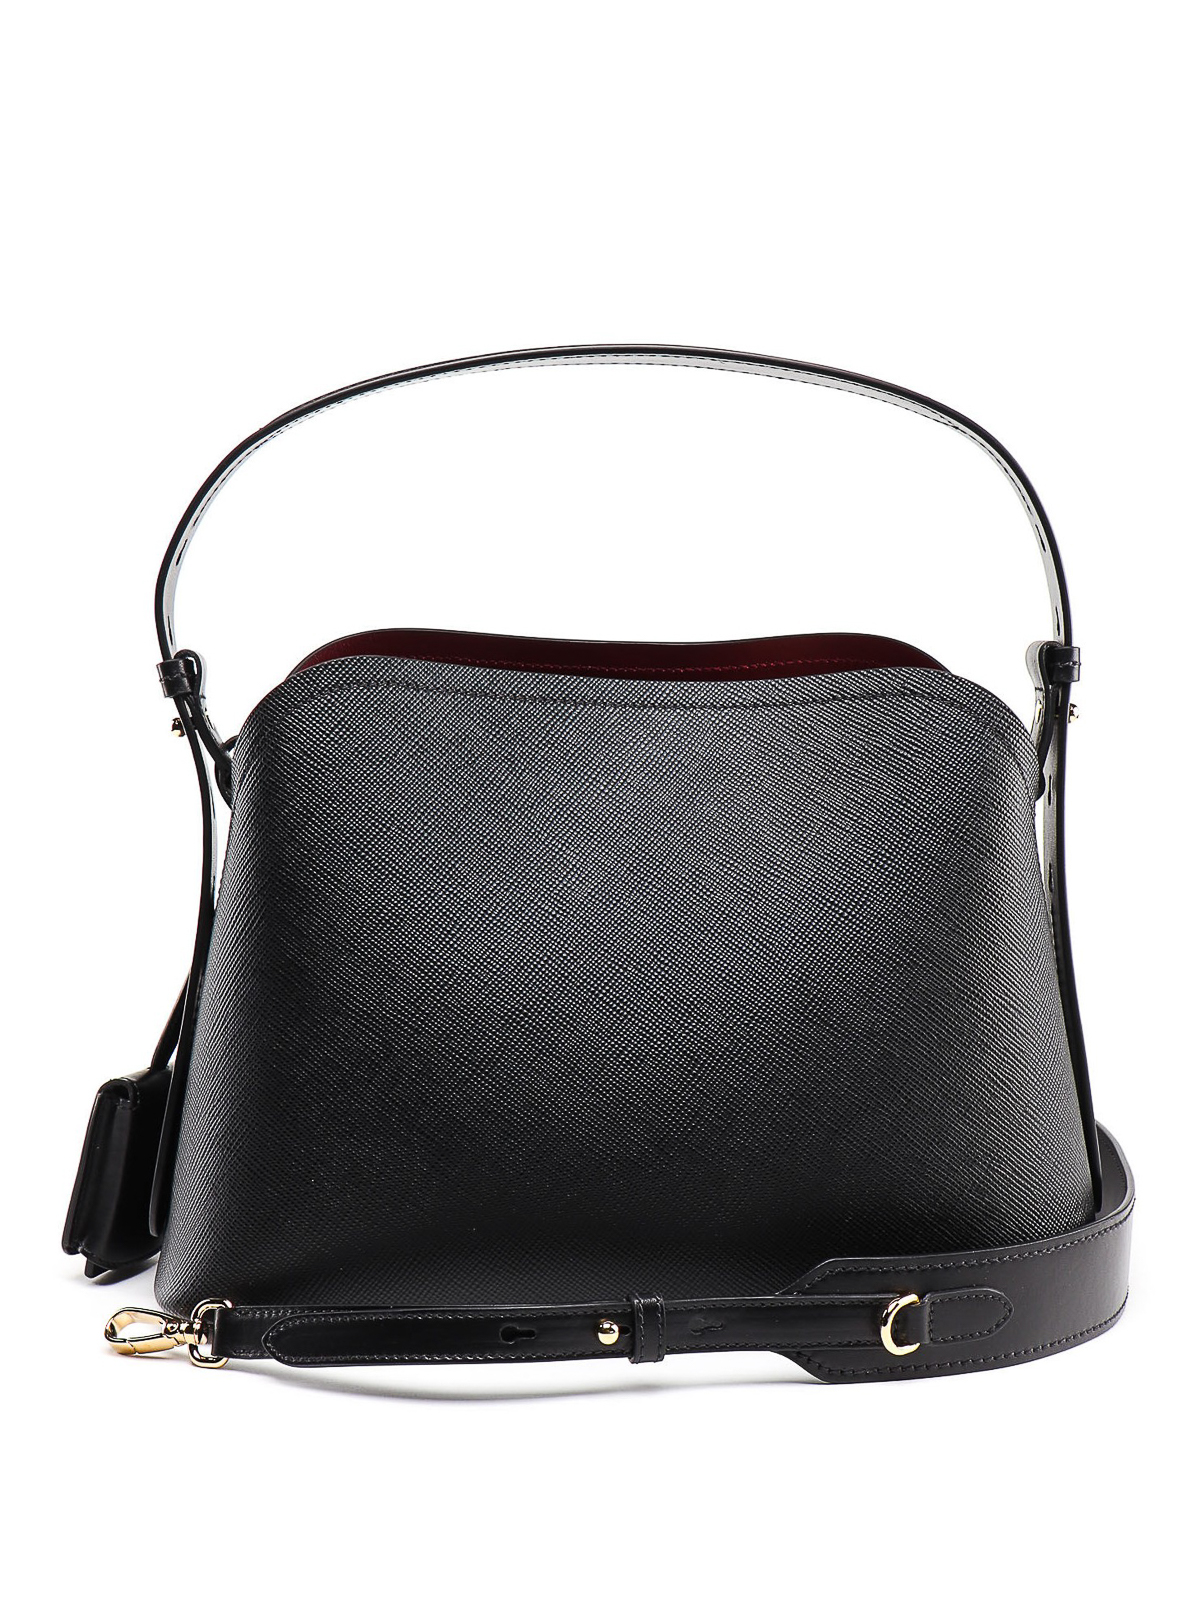 Shoulder bags Prada - Black saffiano leather shoulder bag - 1BA2512ERXME5